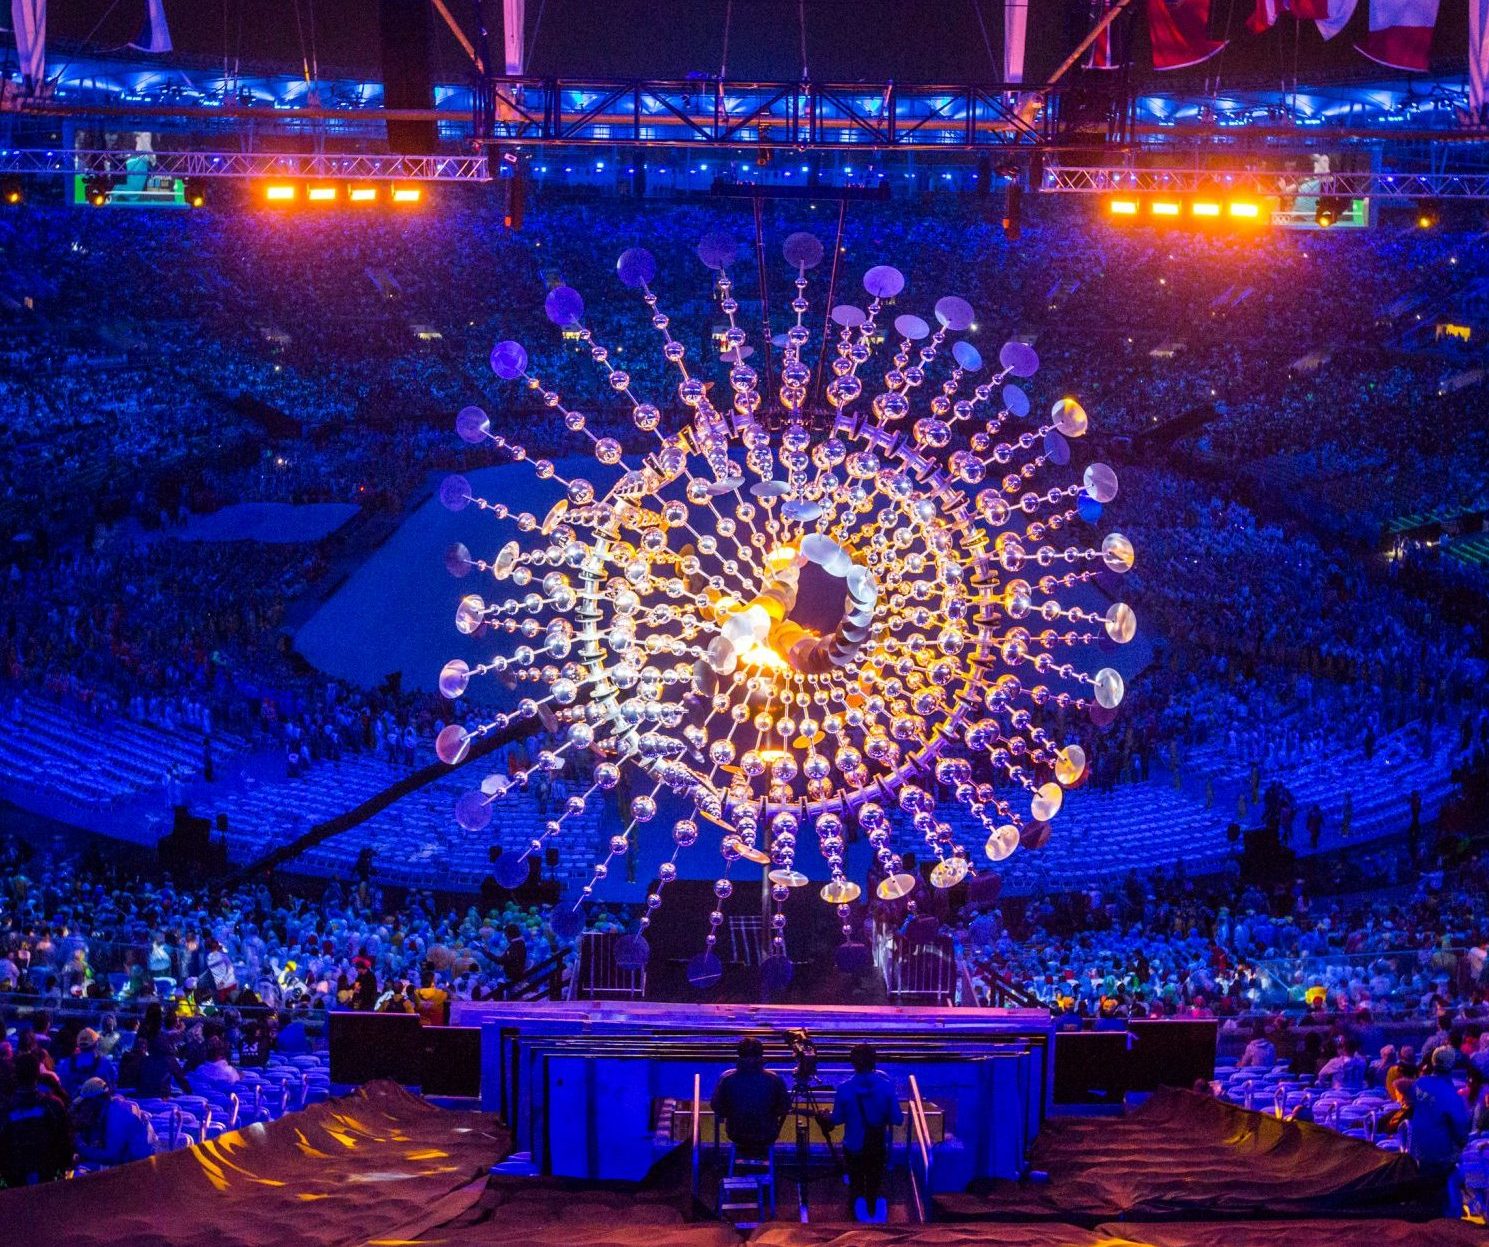 The Sun - Rio Olympics 2016